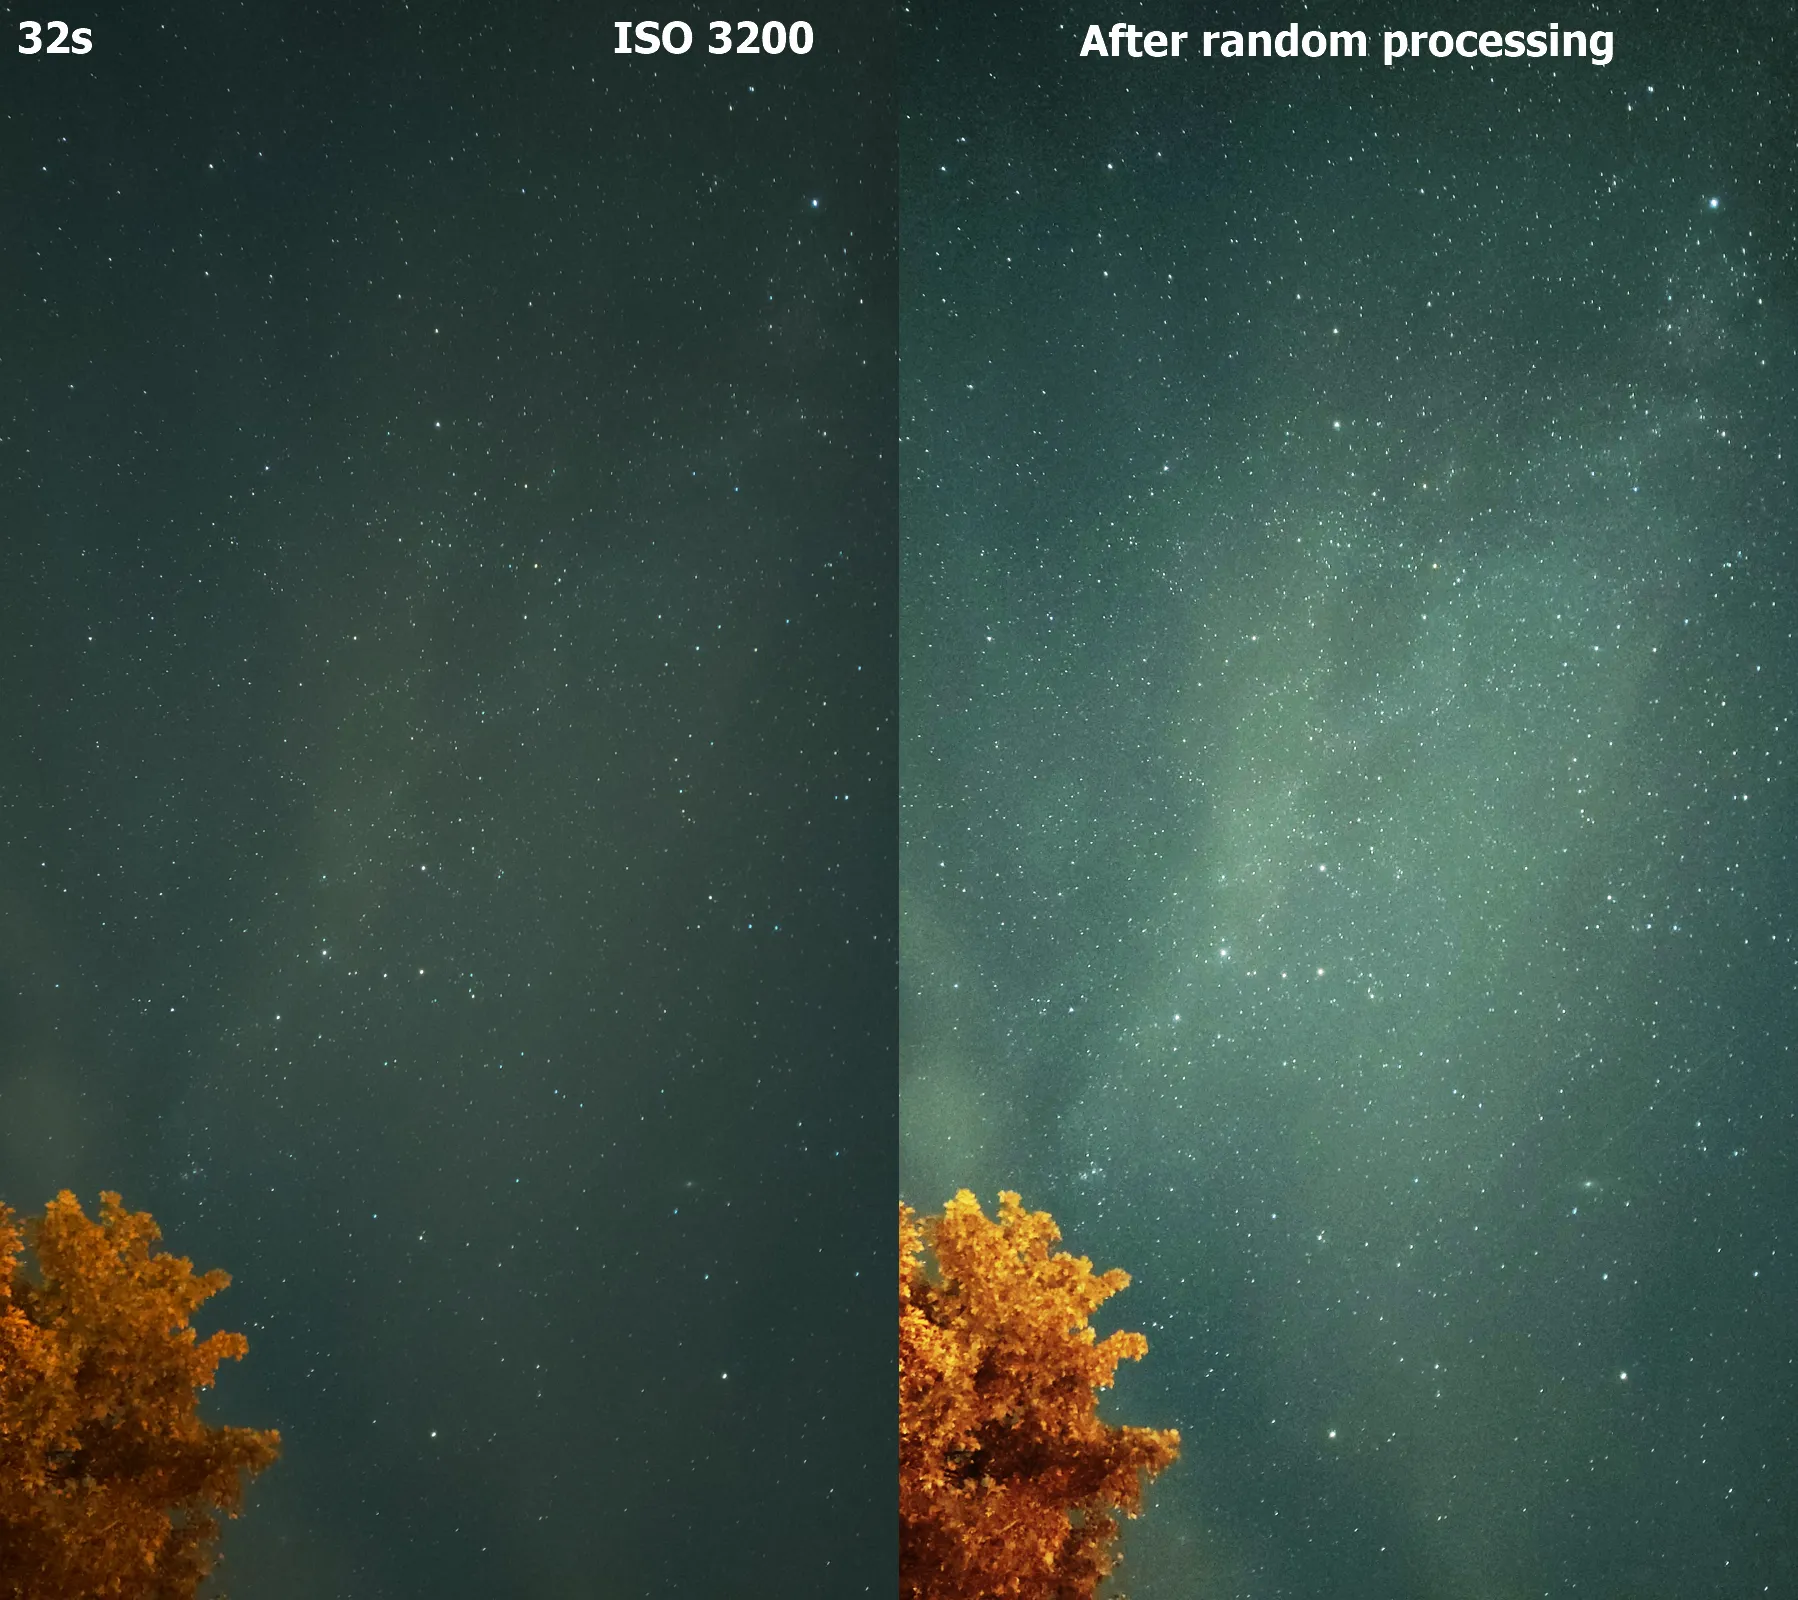 Xiaomi Mi 9 night image comparison